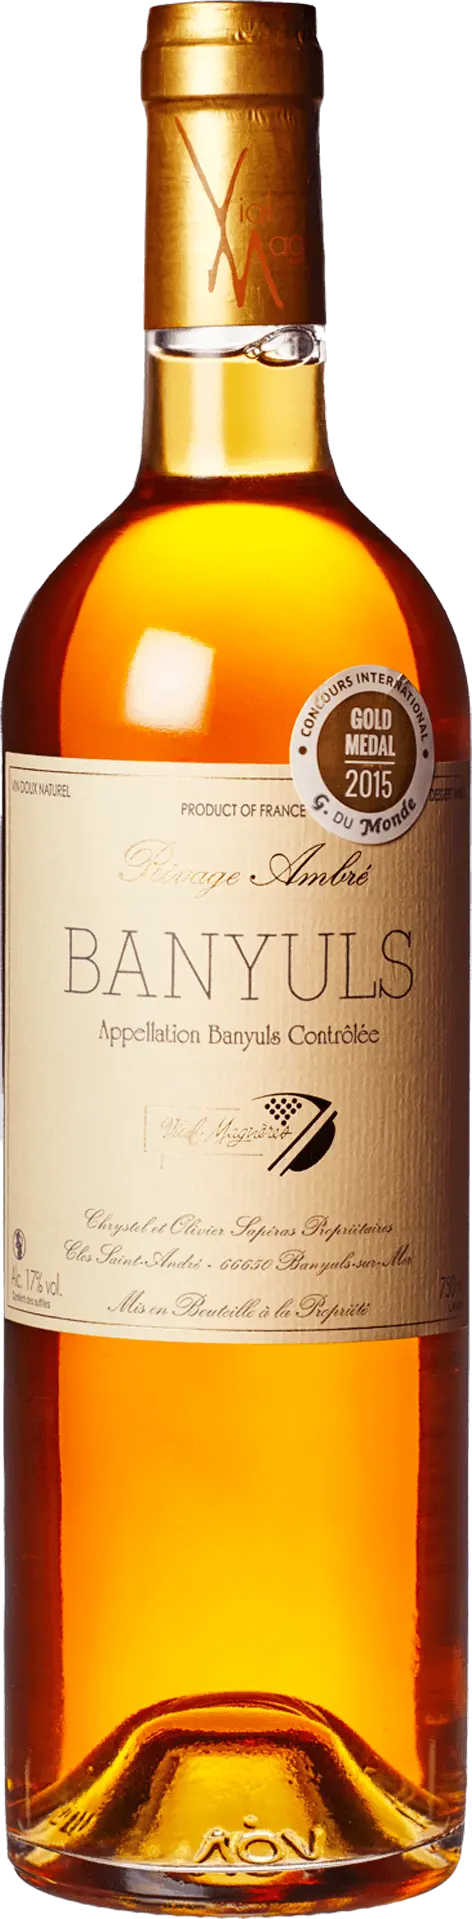 Vial-Magnères - Banyuls Blanc Rivage Ambré Solera